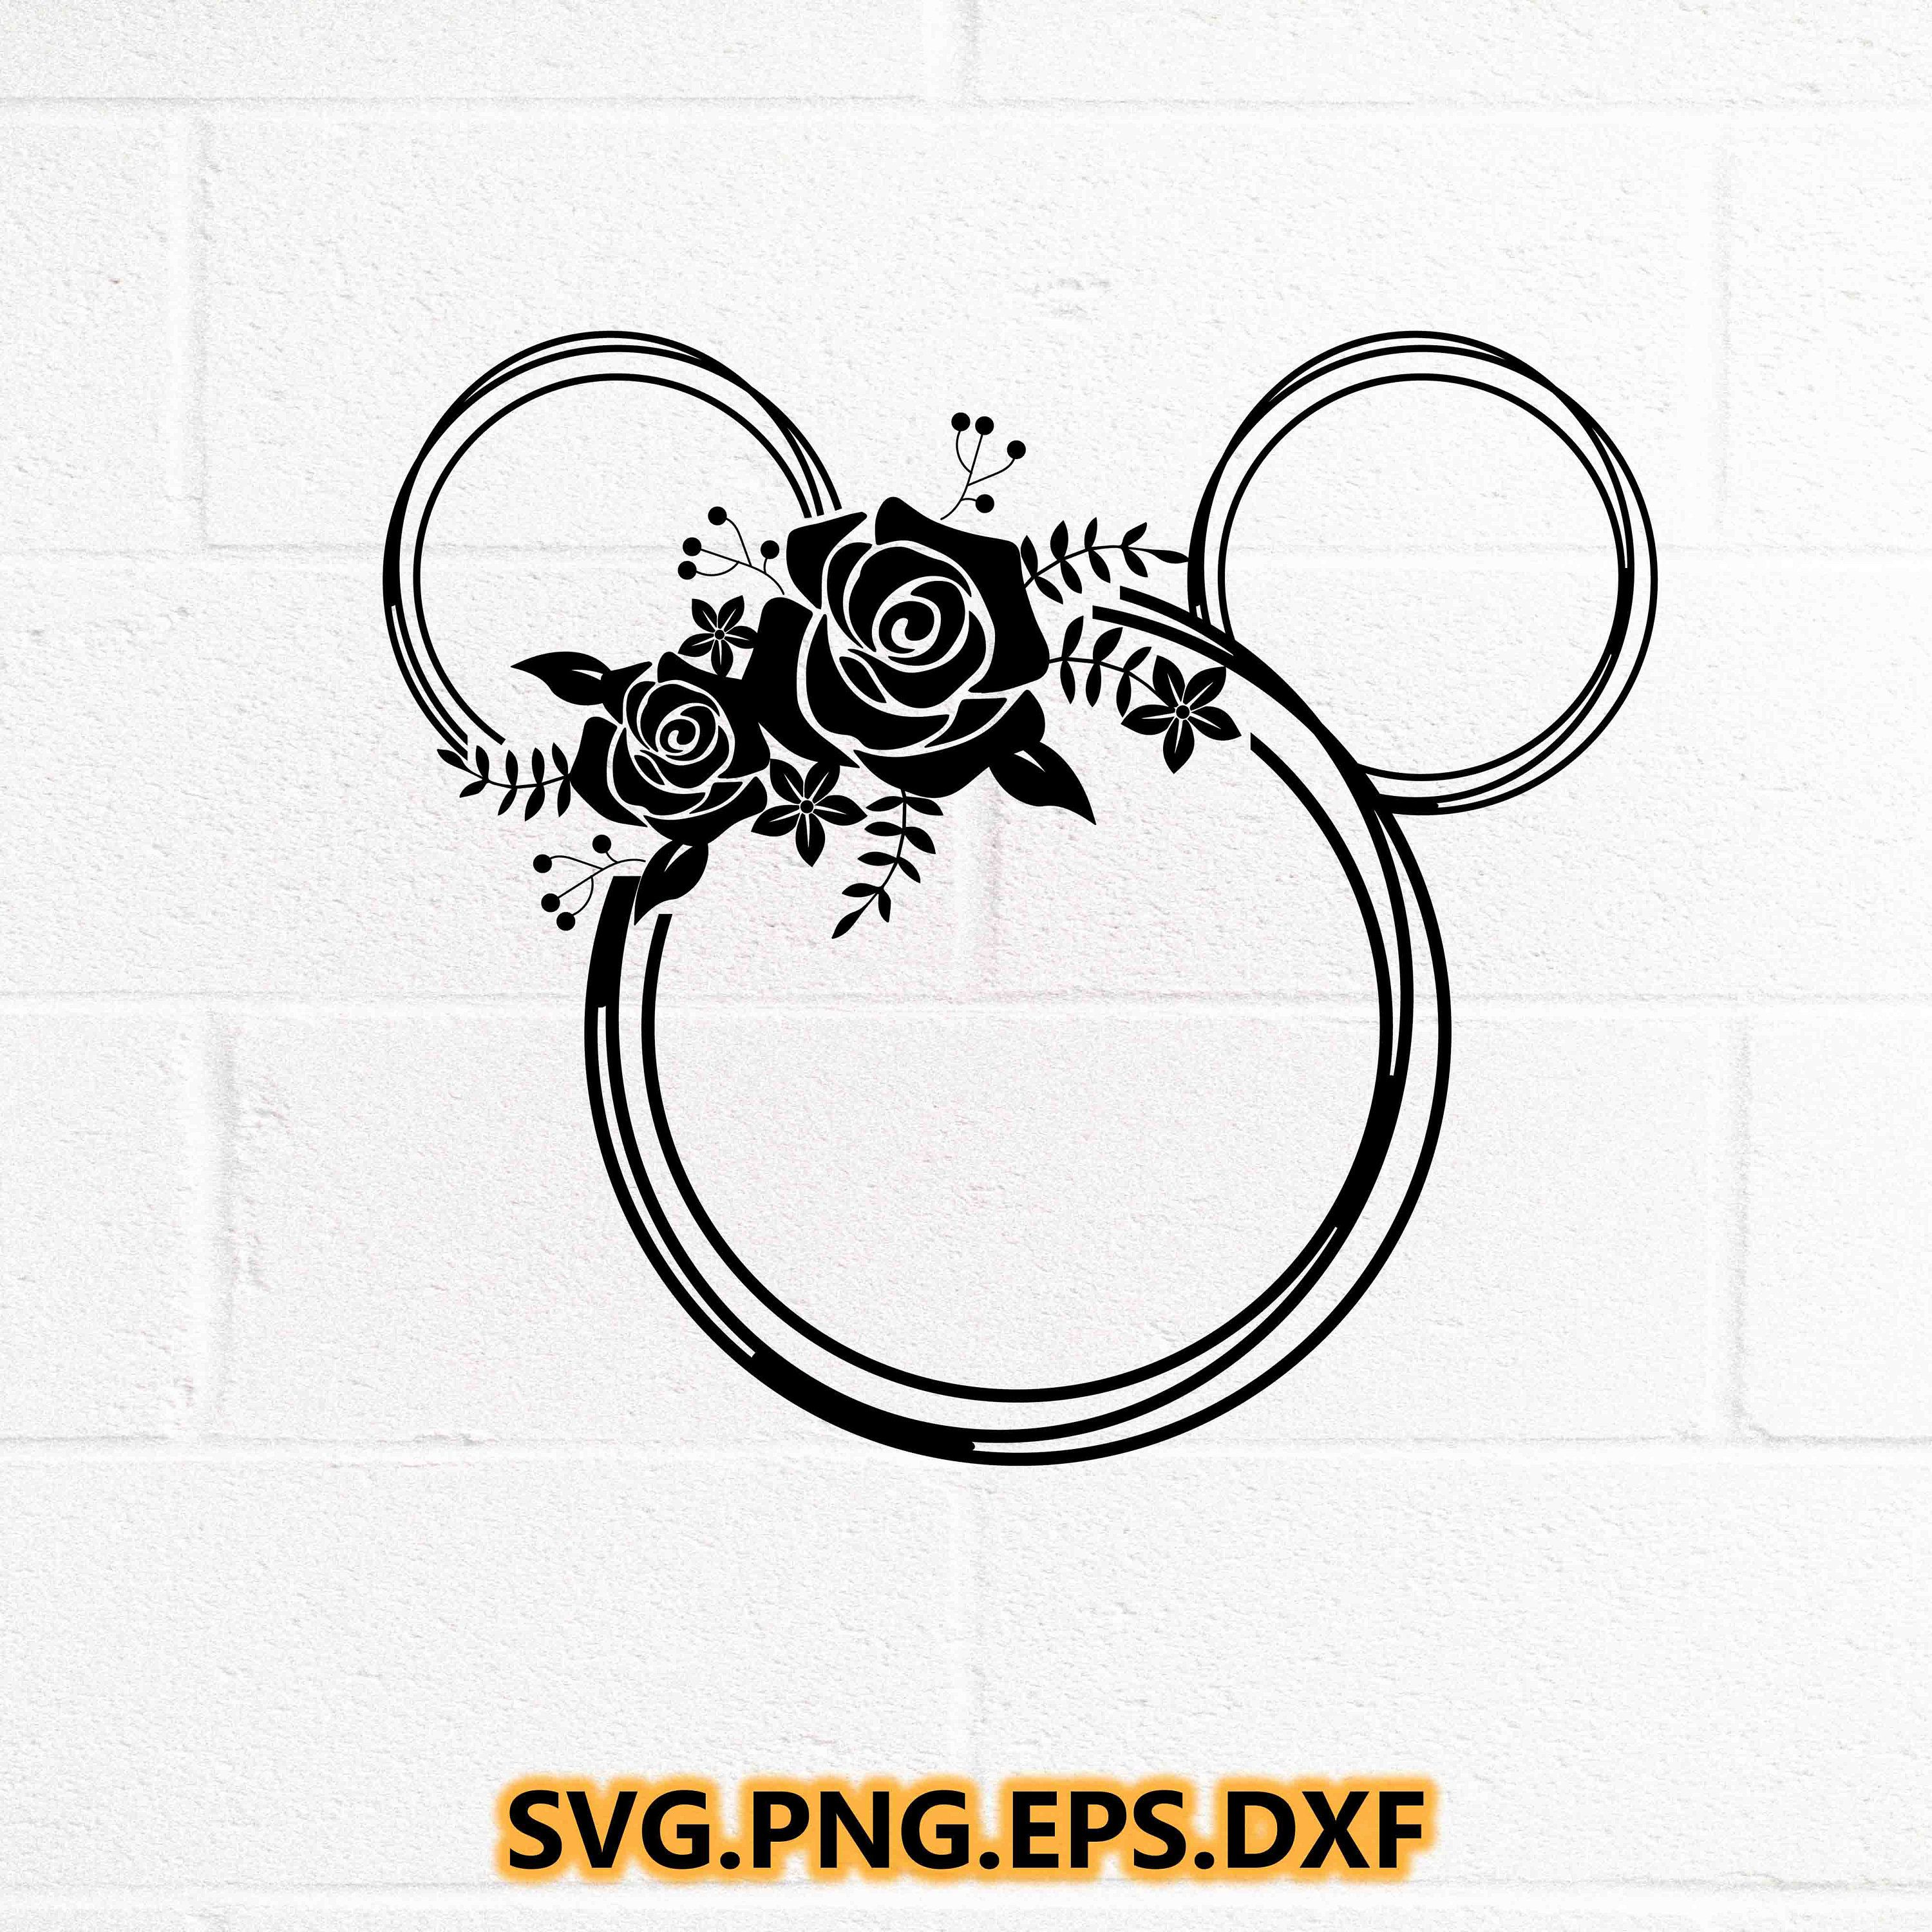 Flower and Garden Minnie SVG / Flower and Garden Mouse / Disney SVG